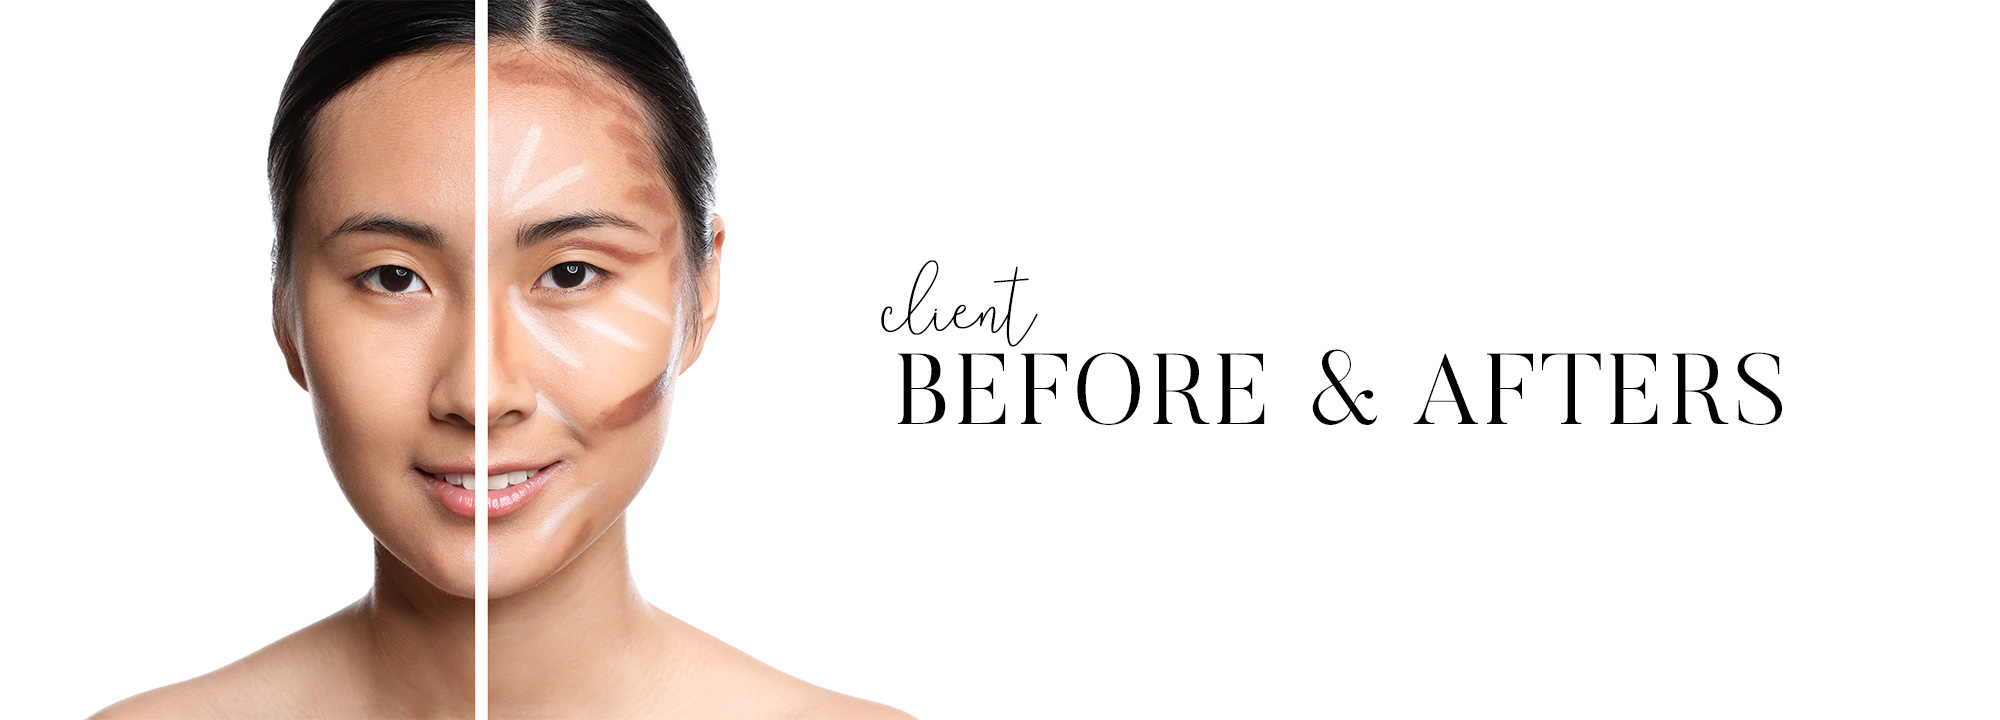 cream makeup before and after, makeup transformation, natural makeup